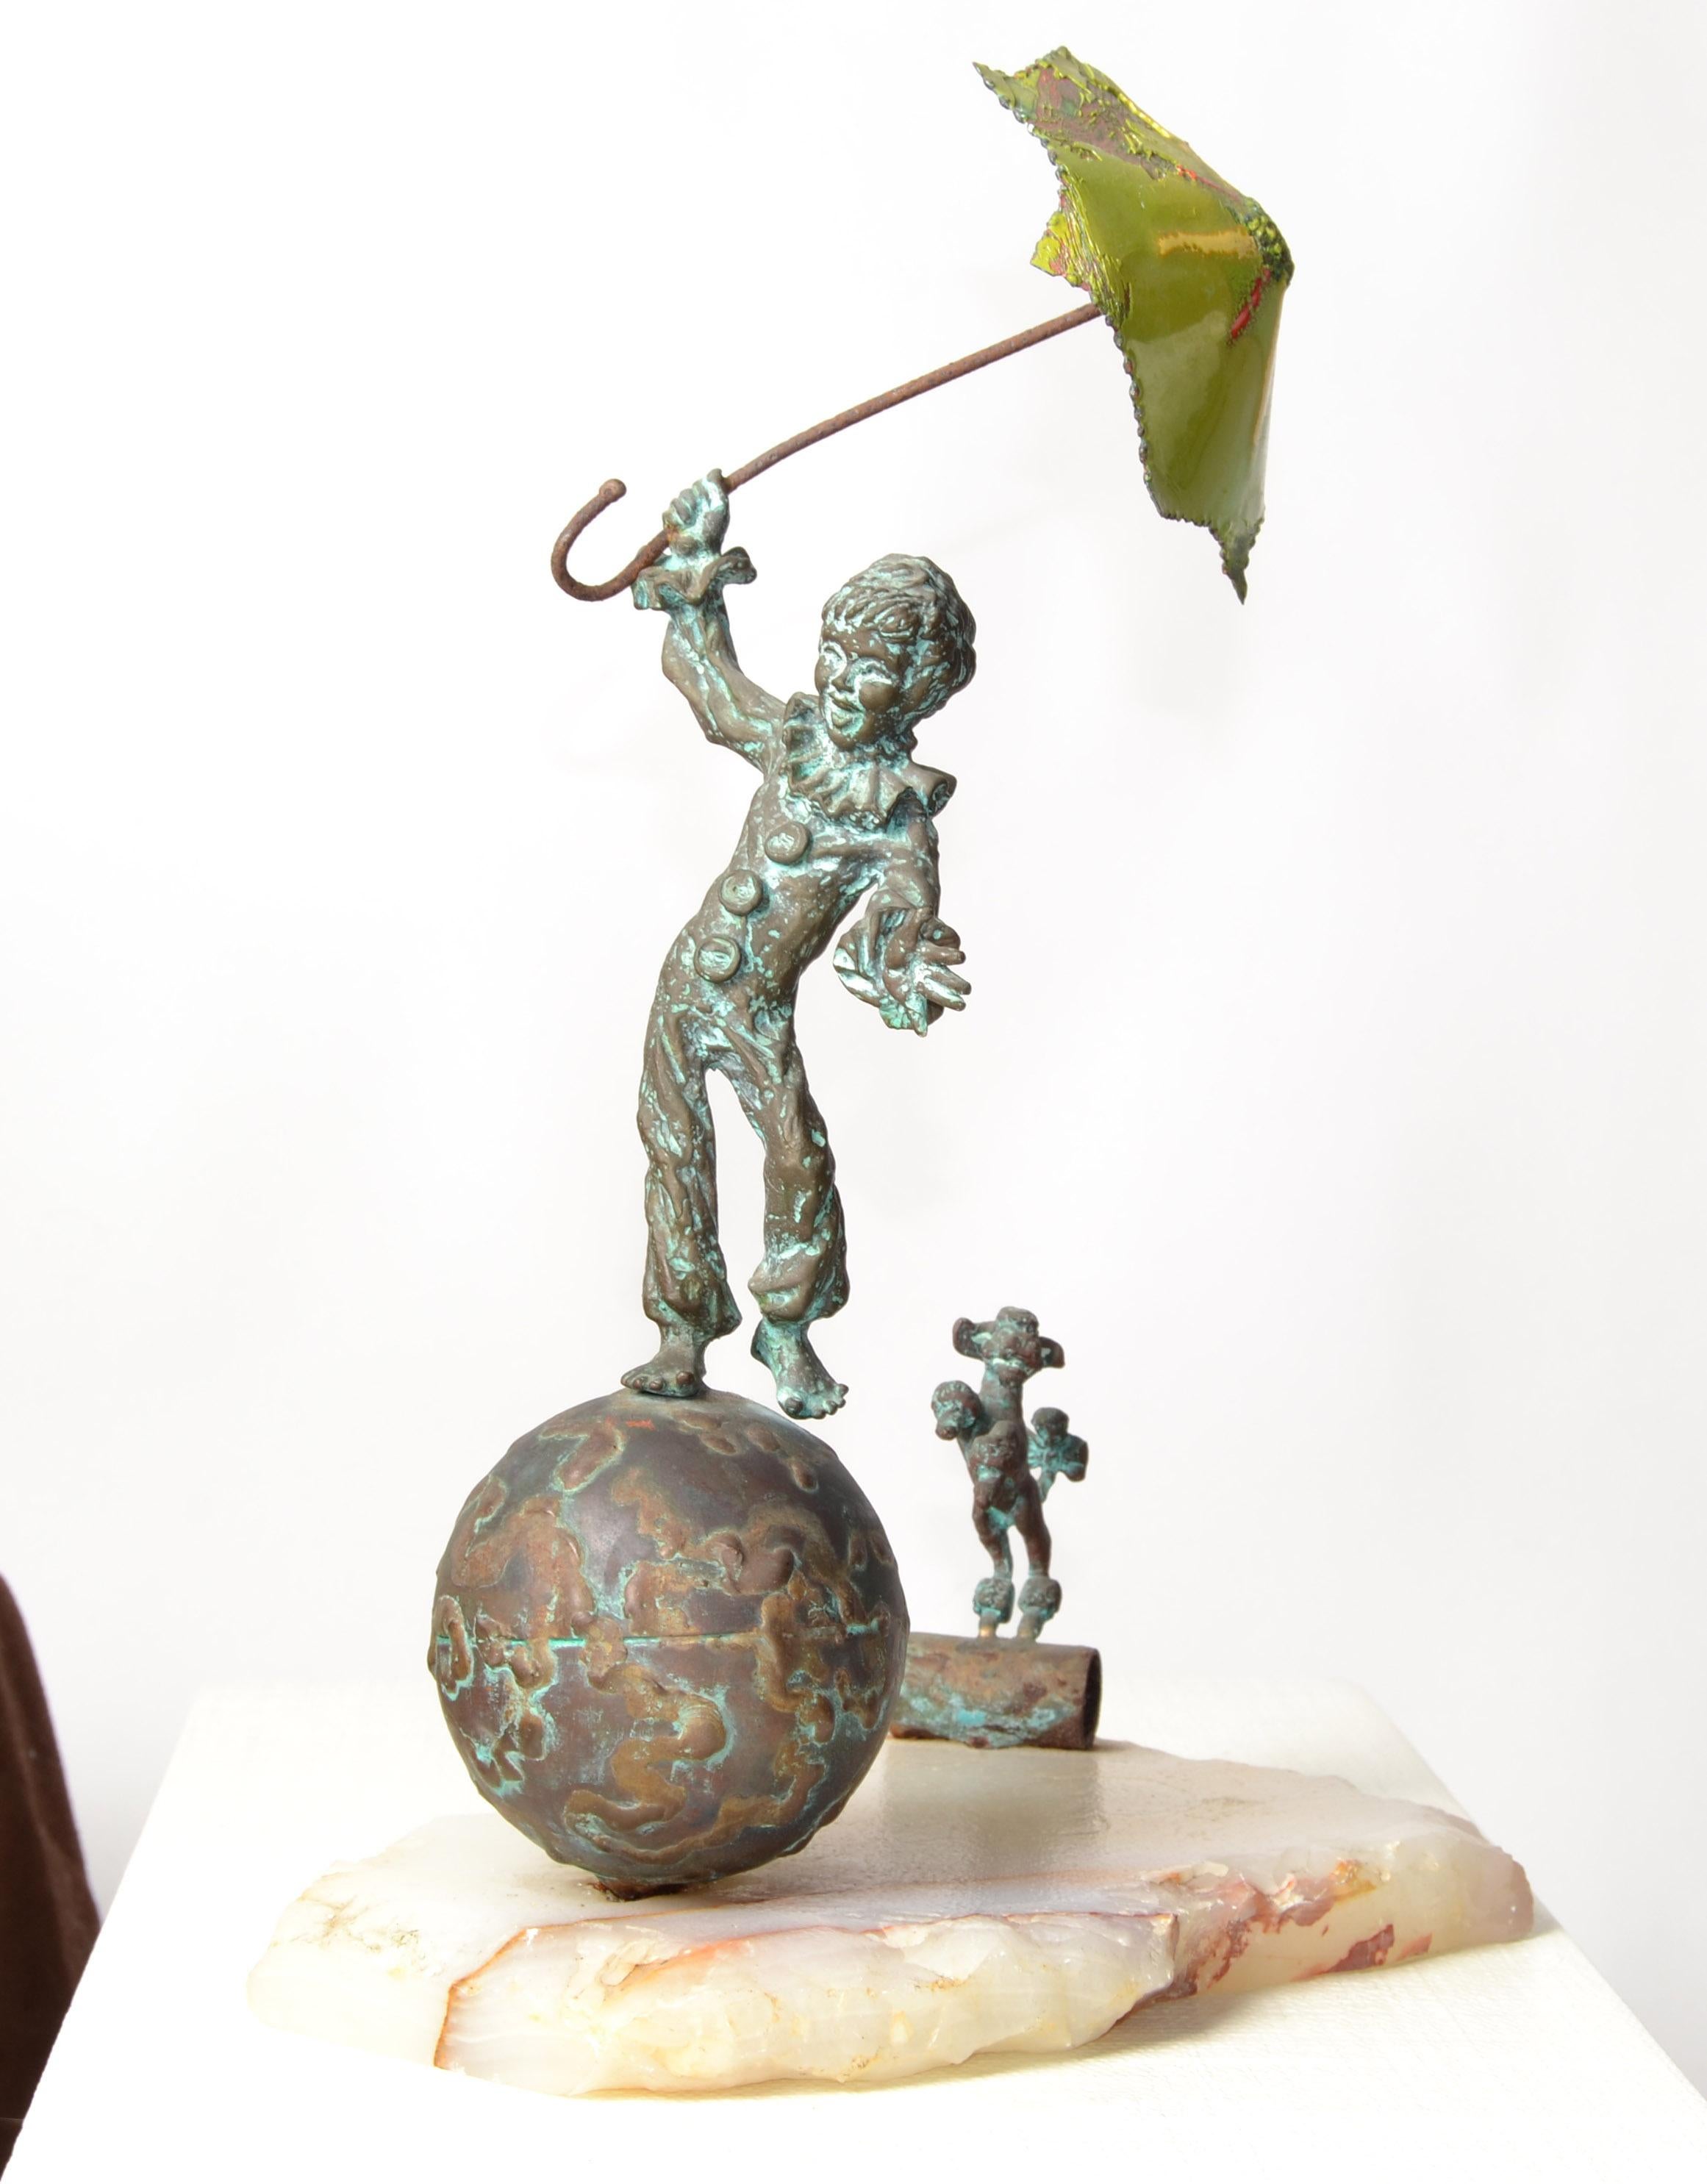 Original Bijan Studio Bronze auf Alabaster Skulptur mit dem Titel On Top Of The World von Künstler Bijan. 
Wunderschöne Statue, Figur oder Tischskulptur eines Clown-Jungen, der mit seinem handbemalten Emaille-Regenschirm auf der runden Welt und